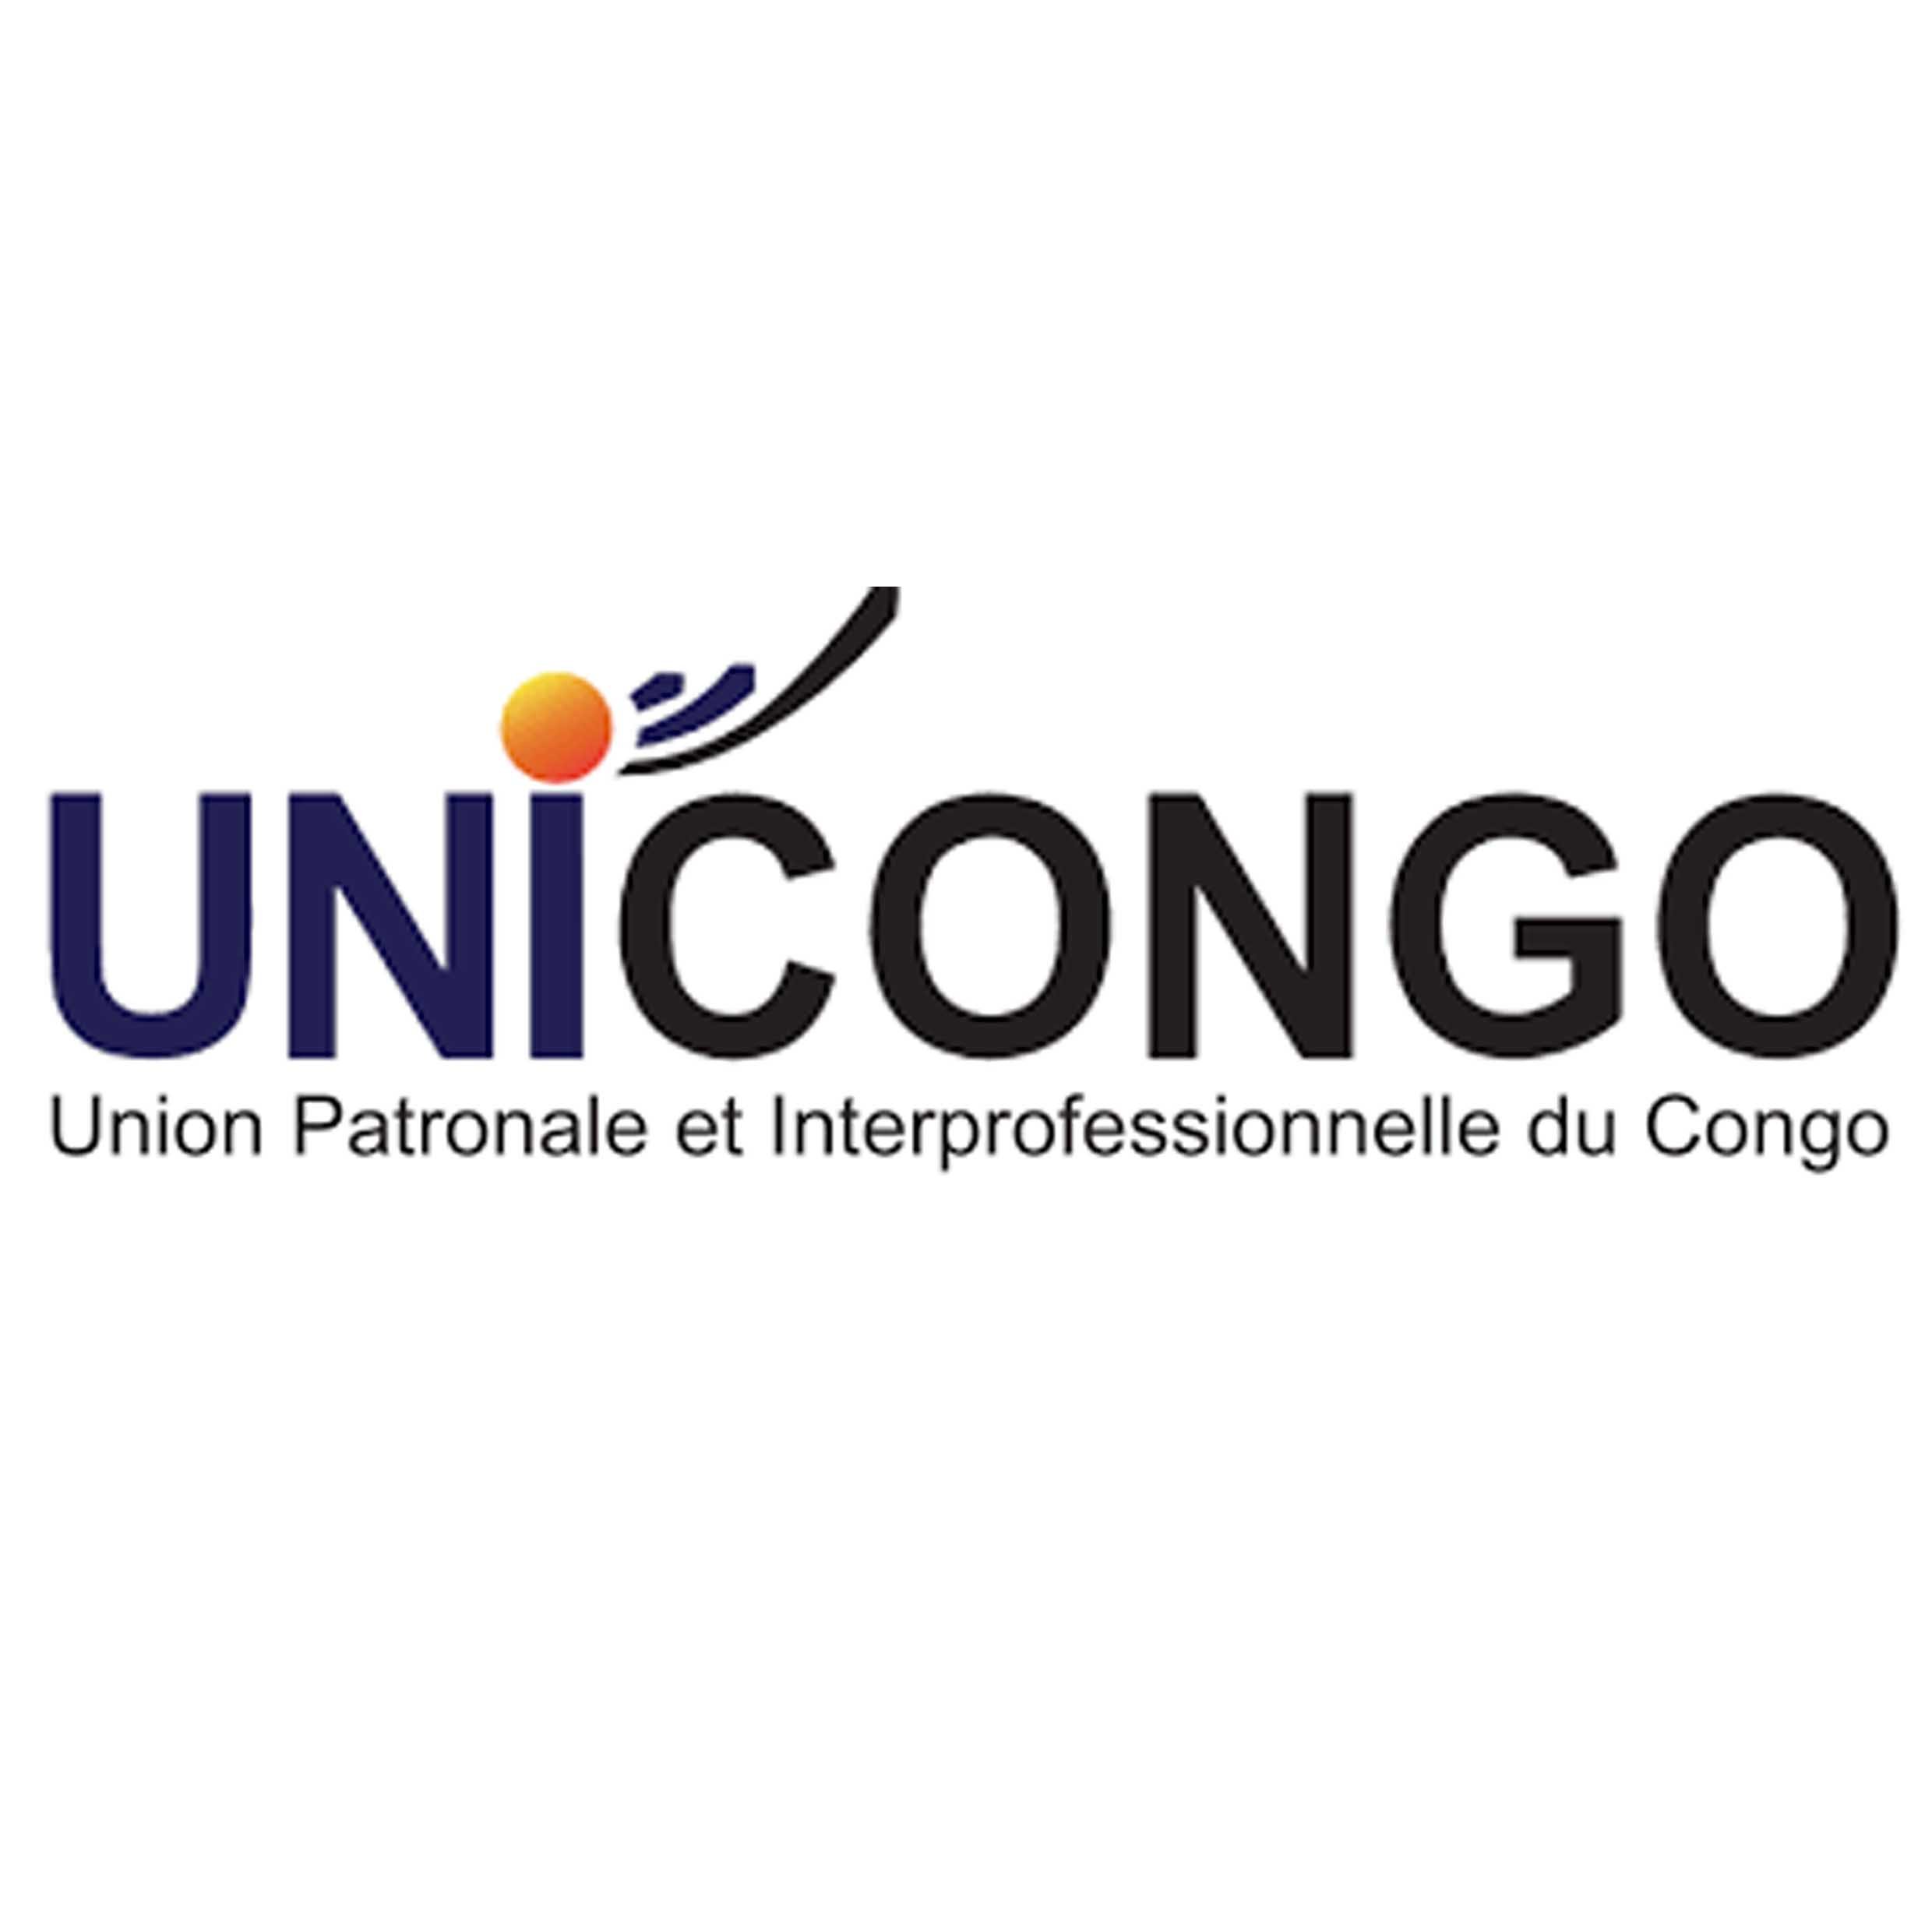 Congo Unicongo.jpg